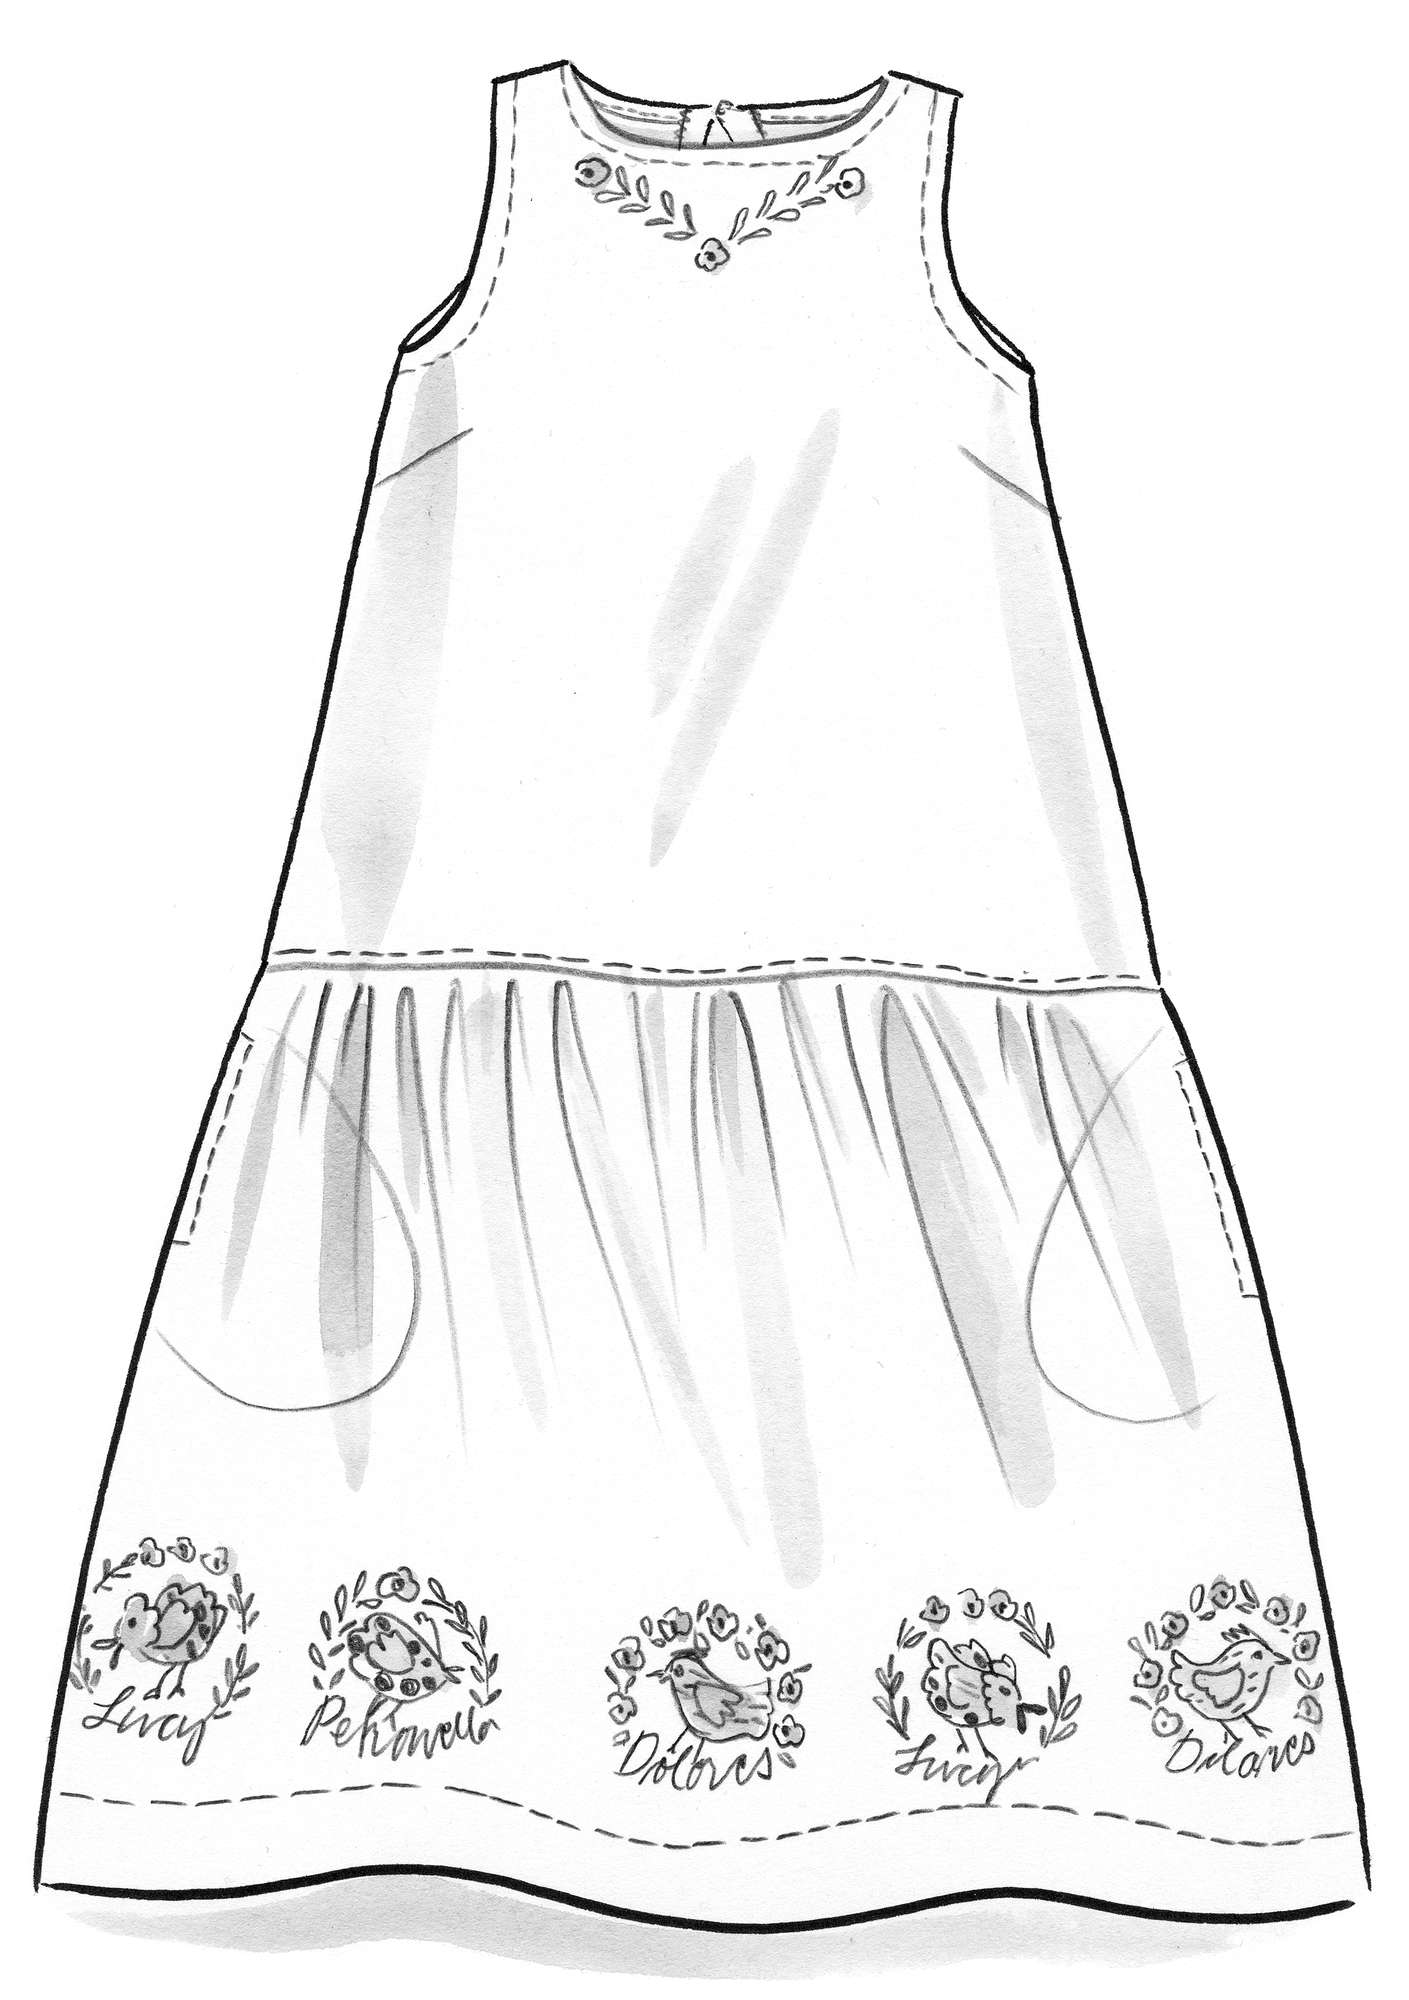 Vævet kjole  Petronella  i økologisk bomuld/hør